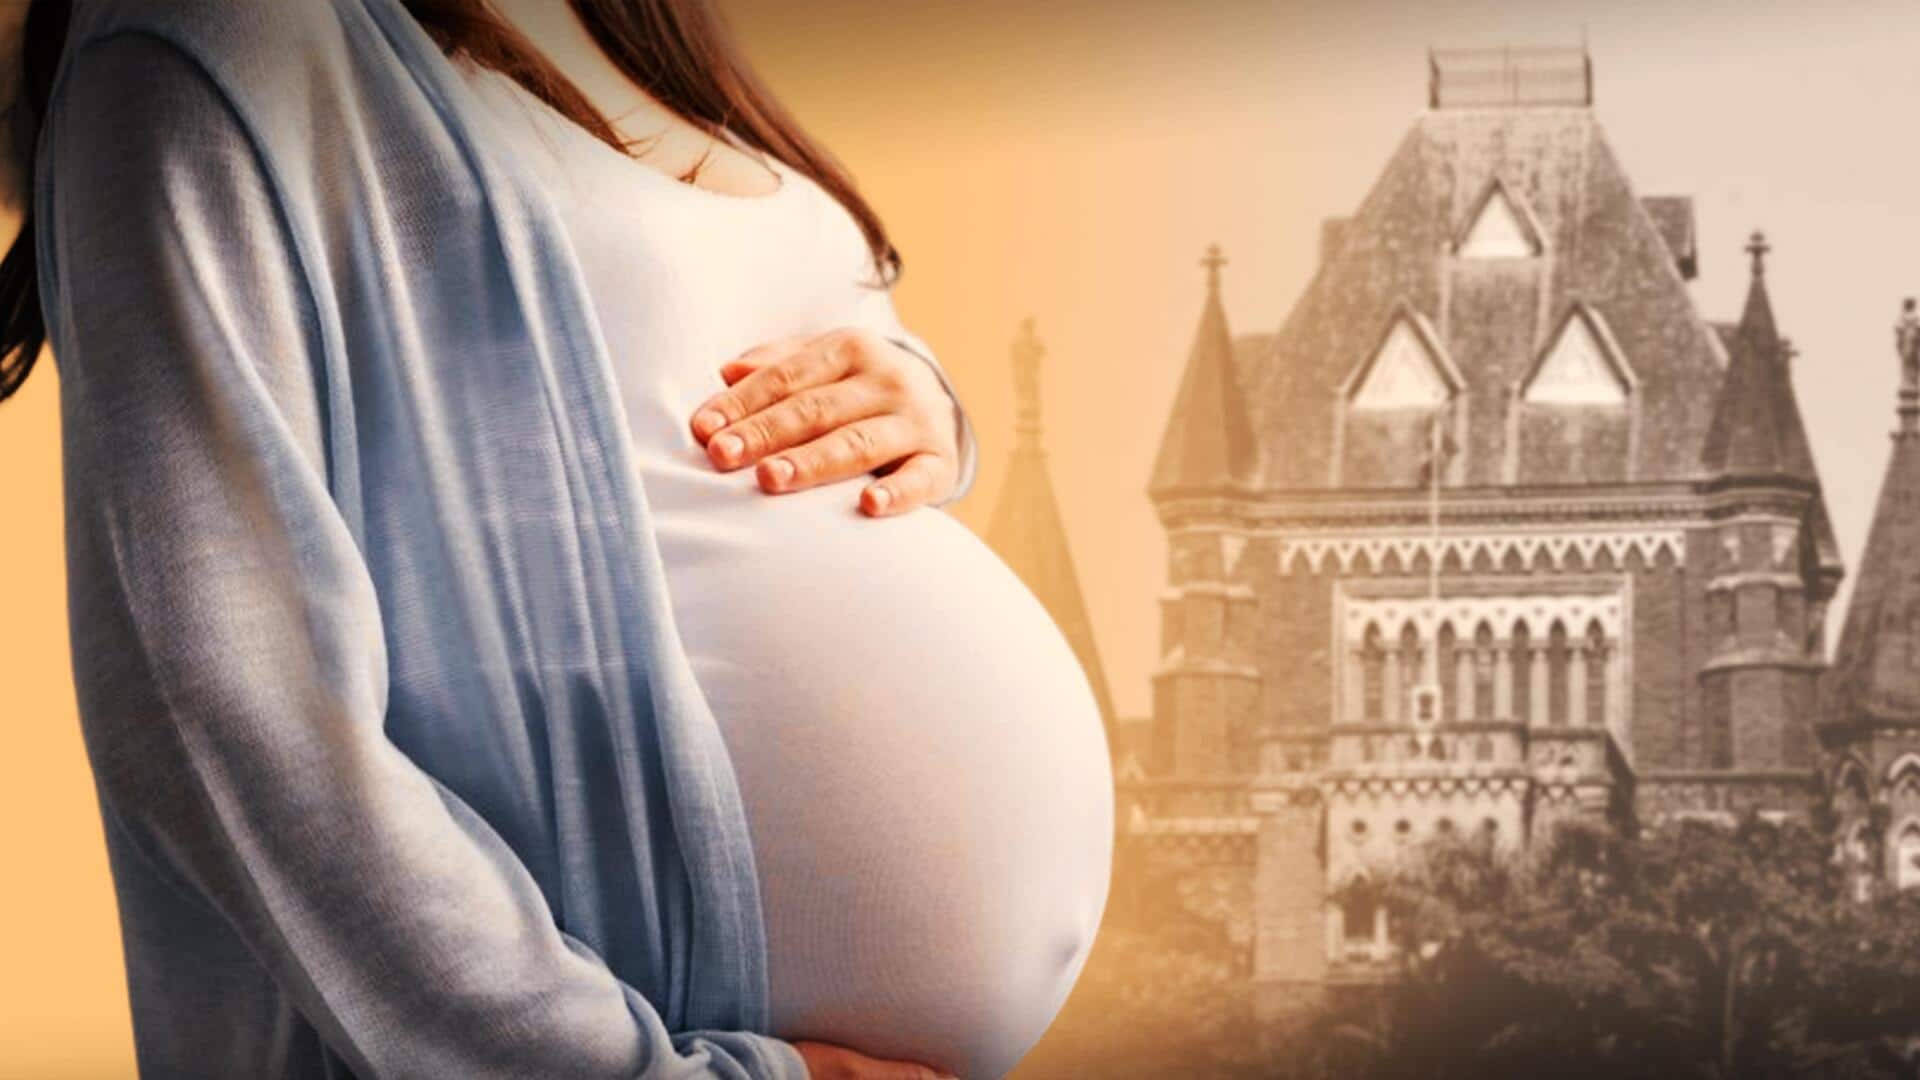 बॉम्बे हाई कोर्ट का 17 वर्षीय लड़की को गर्भपात की अनुमति देने से इनकार, जानें मामला